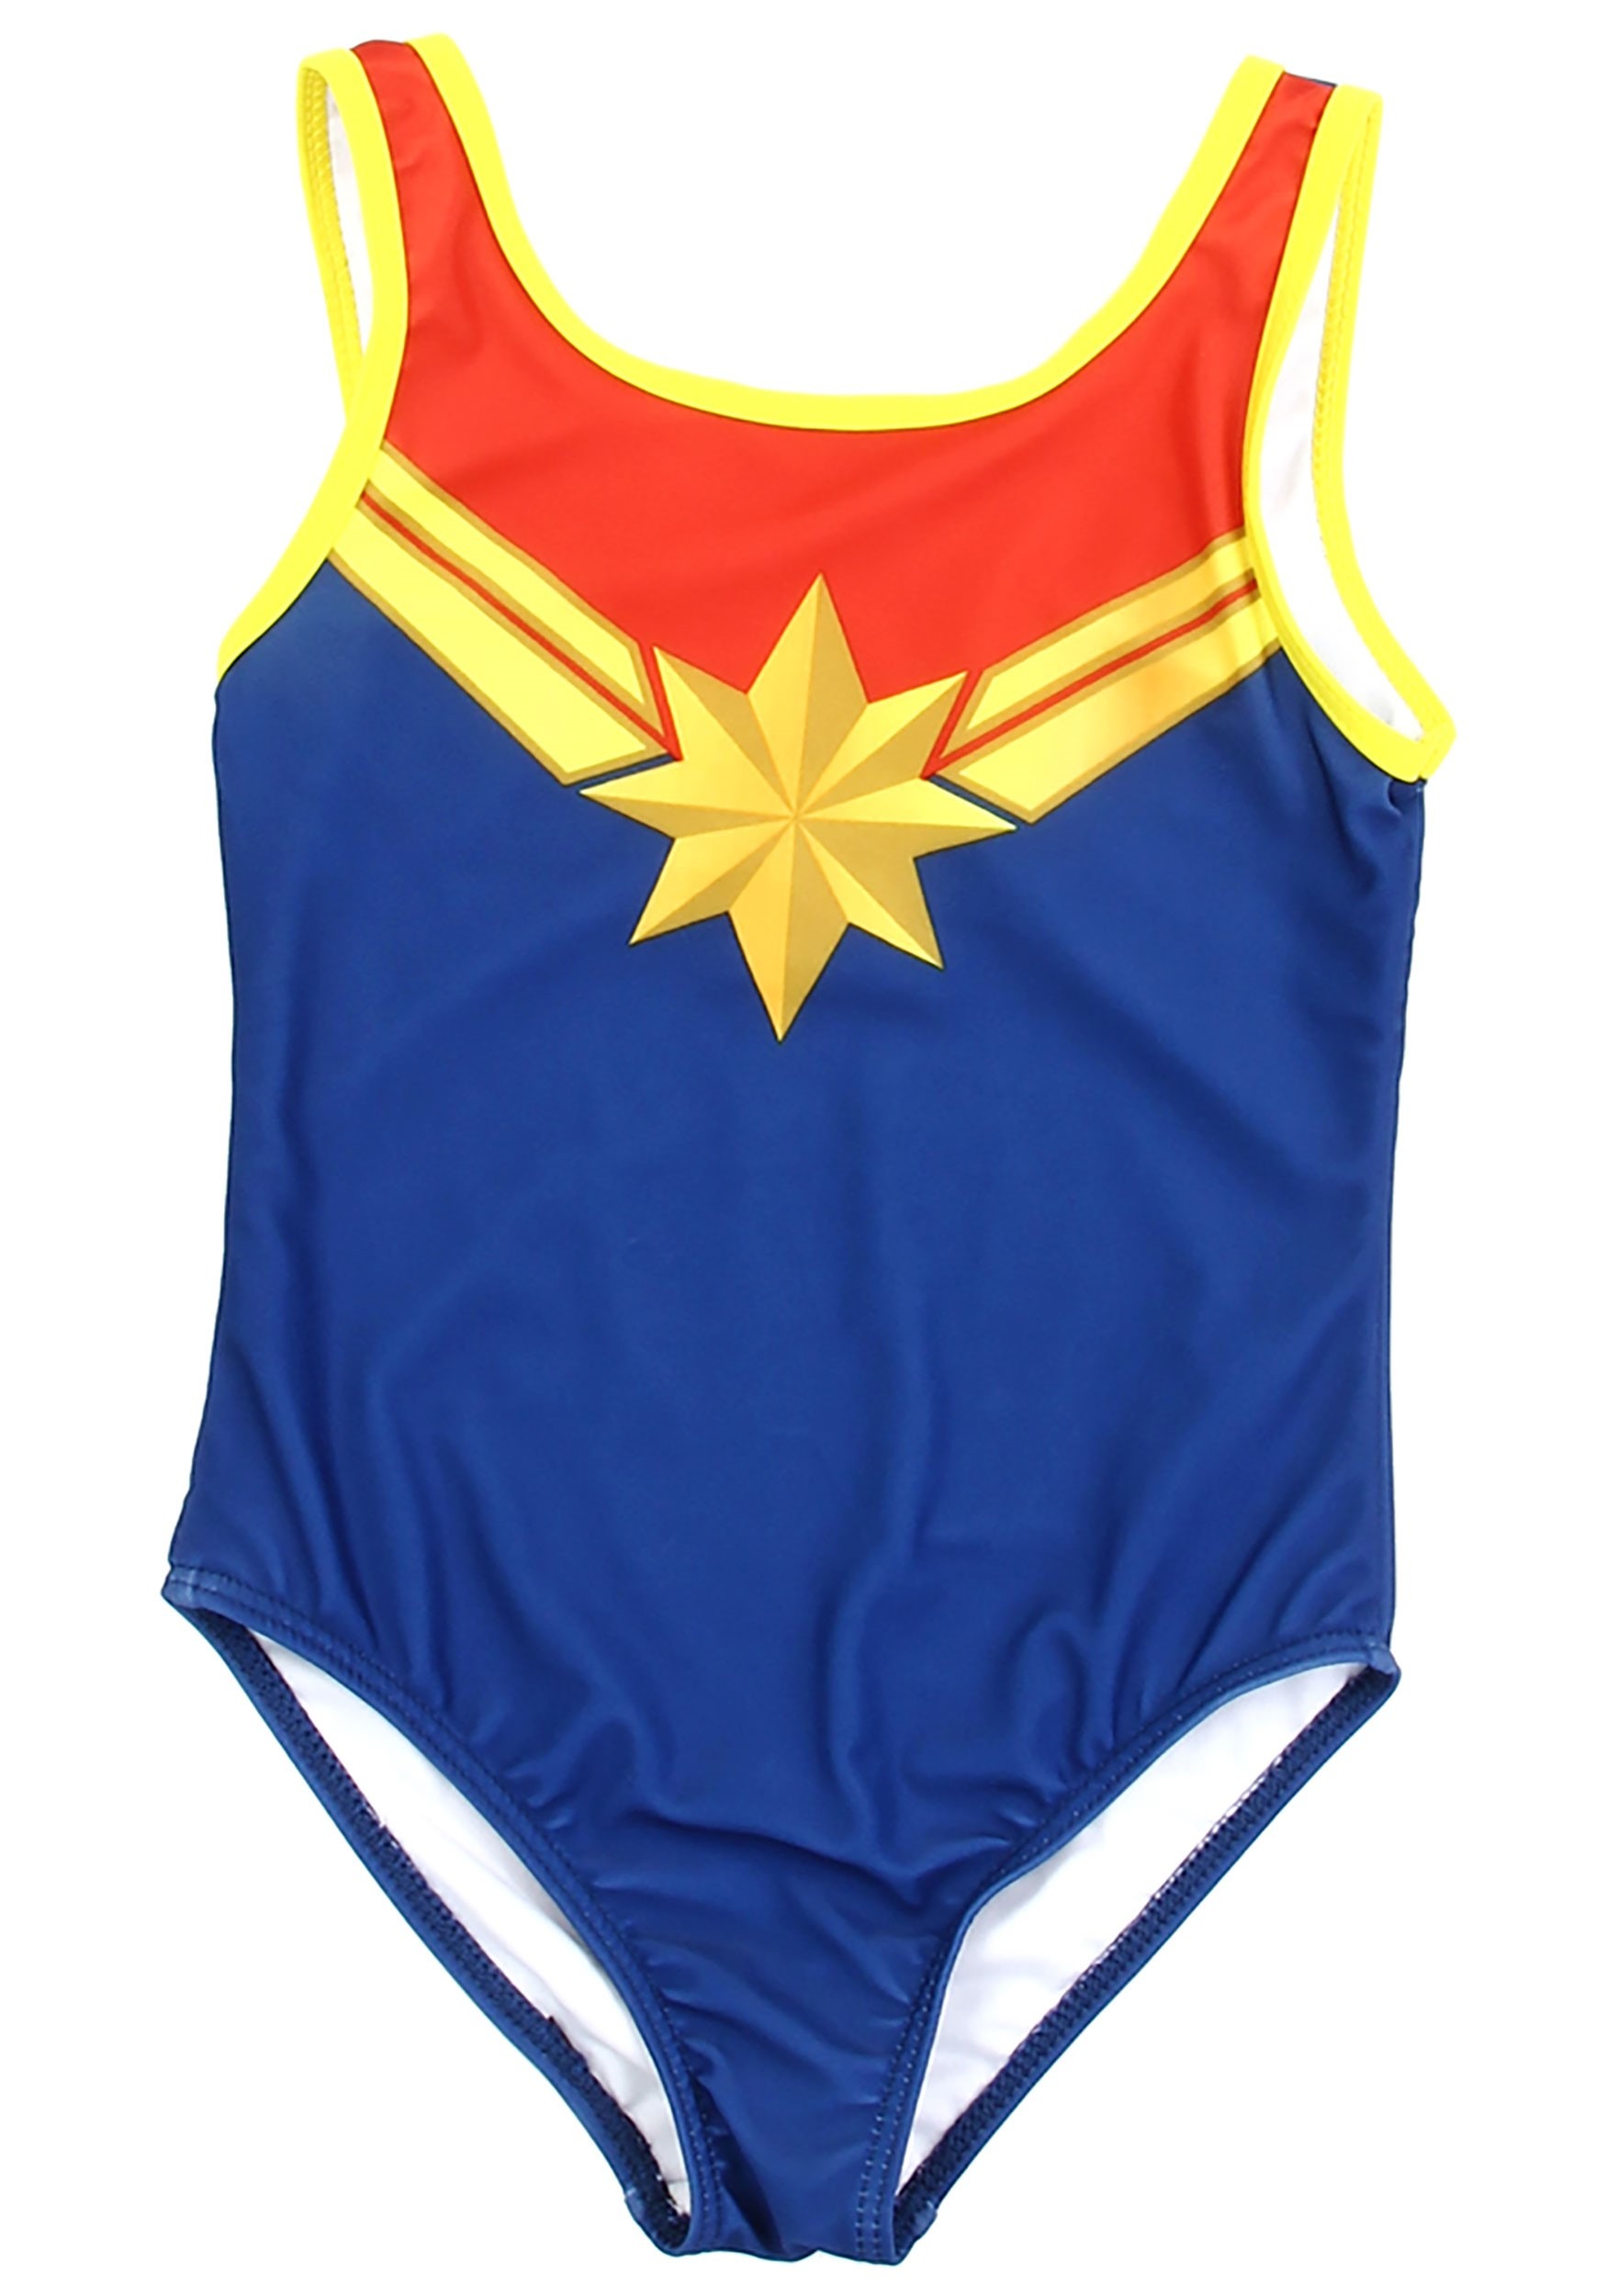 Captain Marvel Swimsuit for Girls